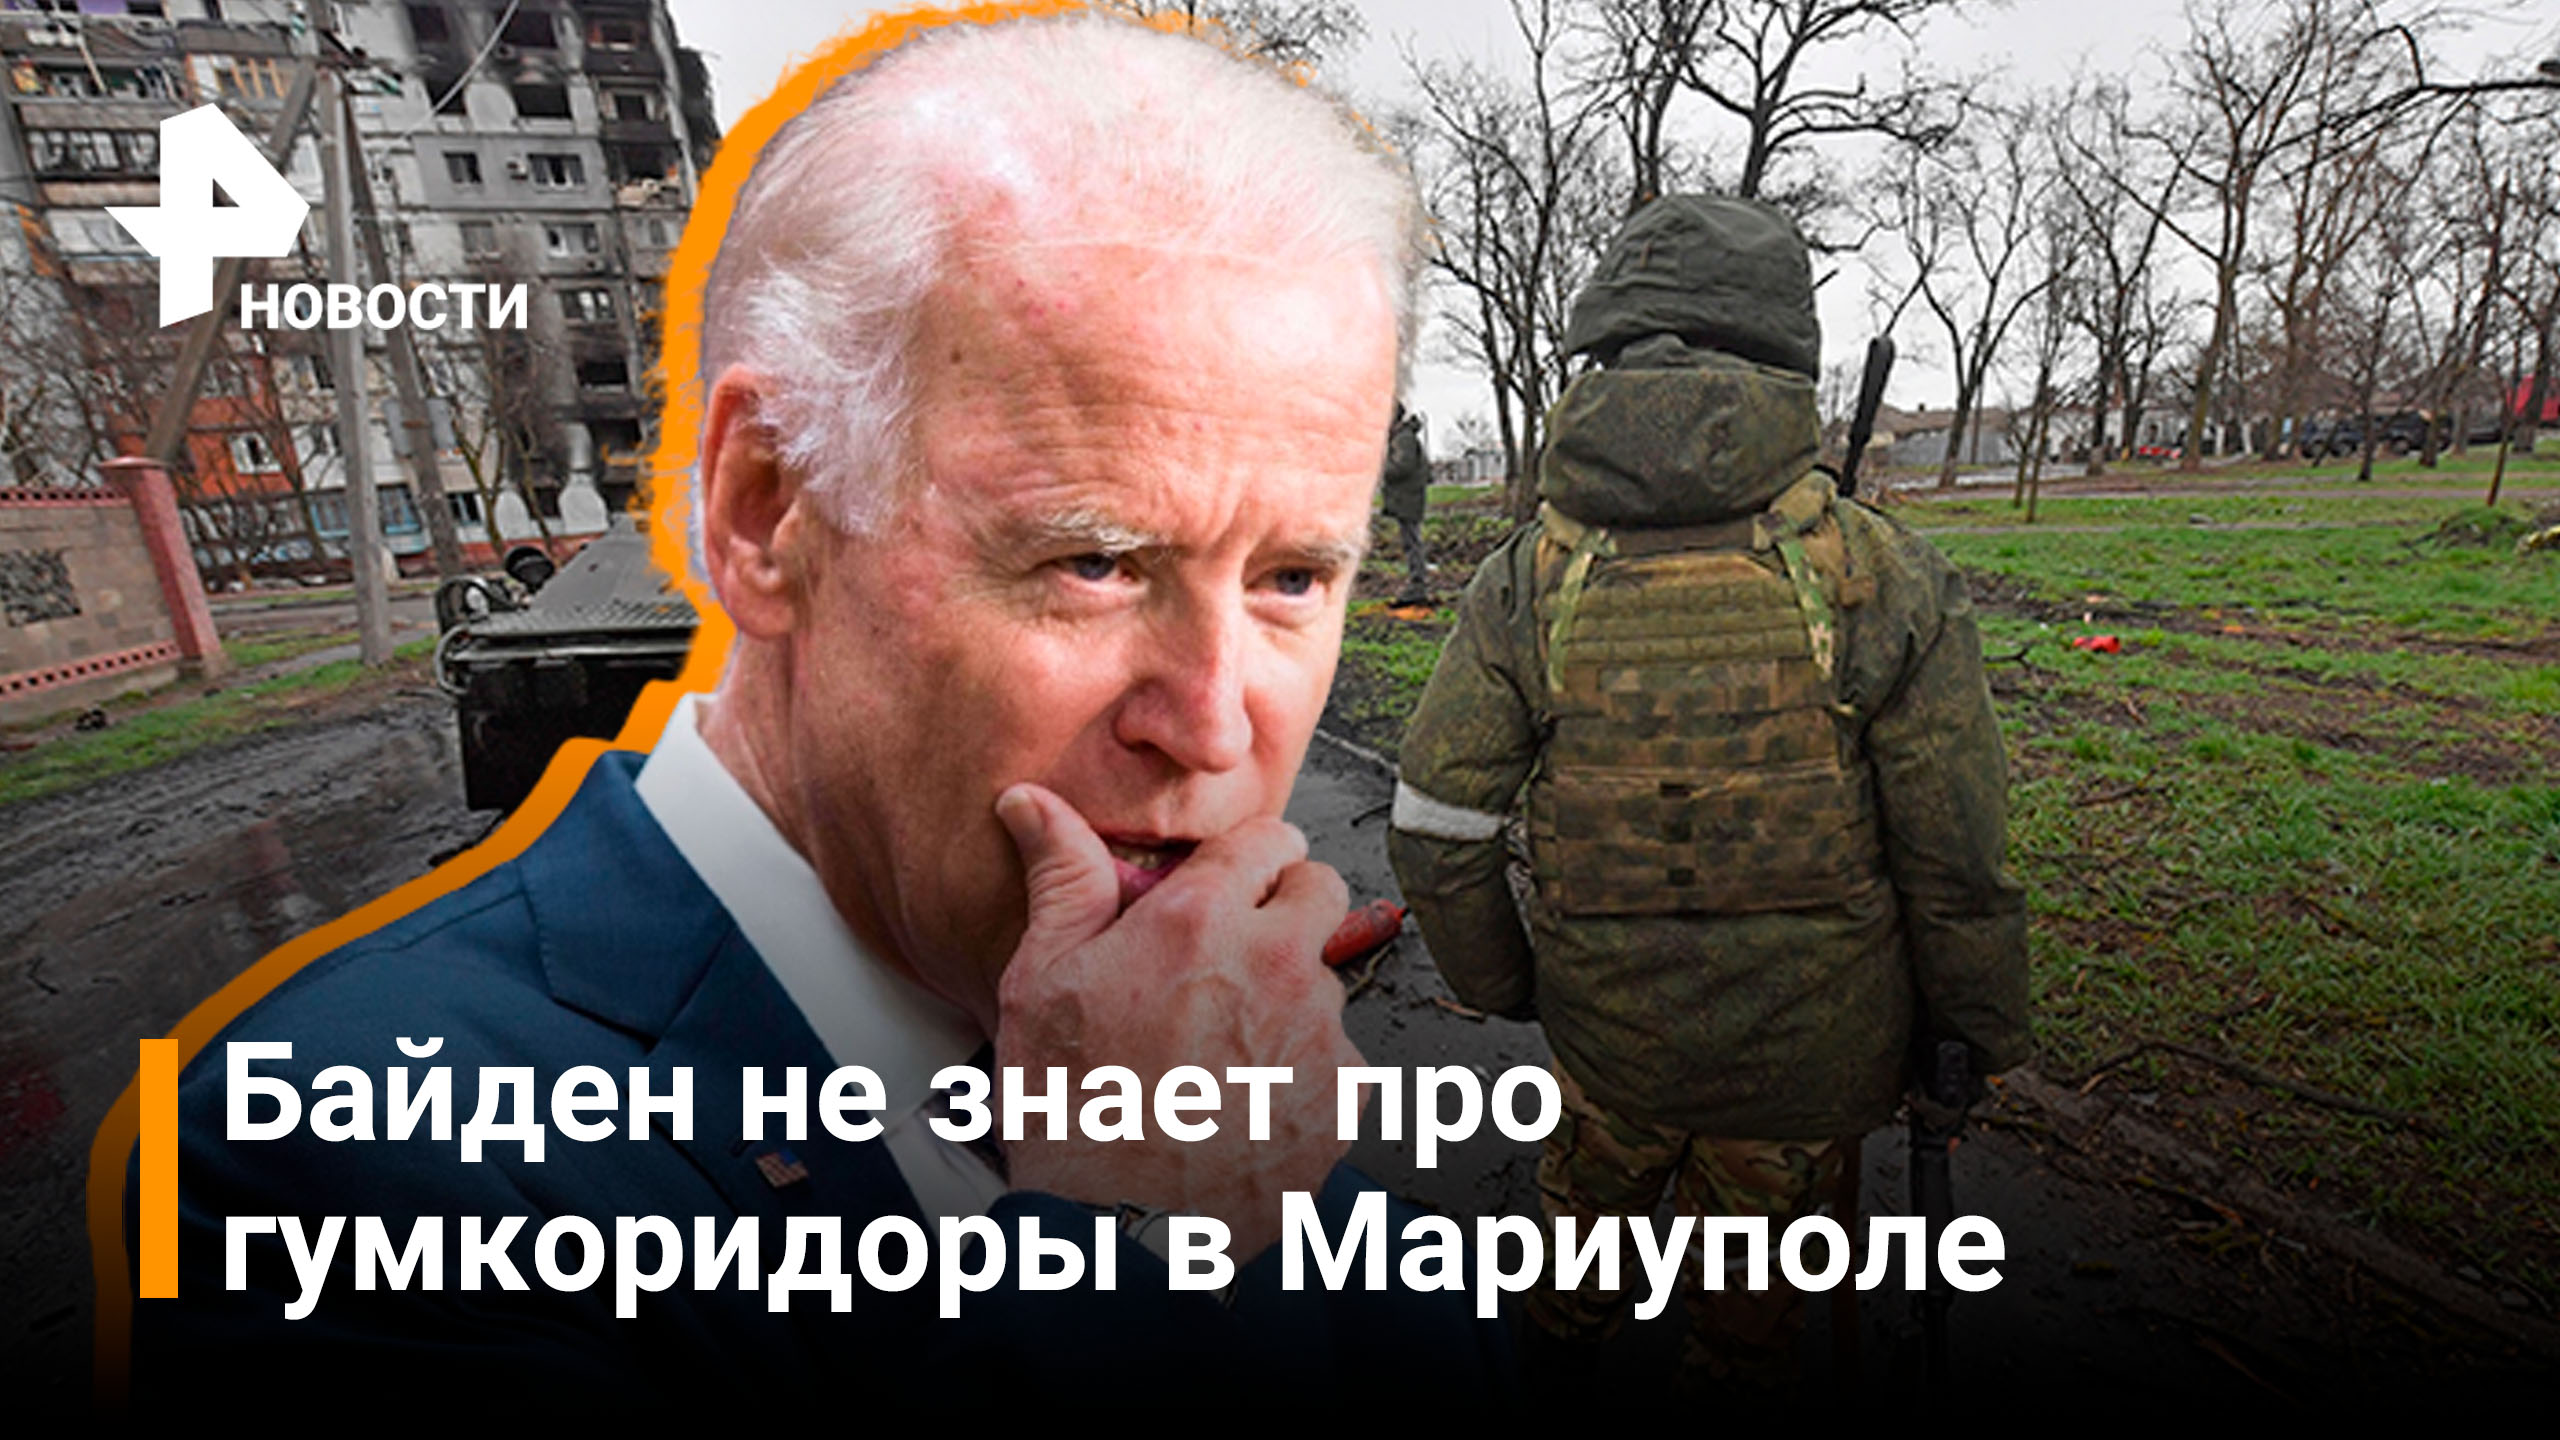 Байден не верит, что Россия взяла Мариуполь под контроль / РЕН Новости